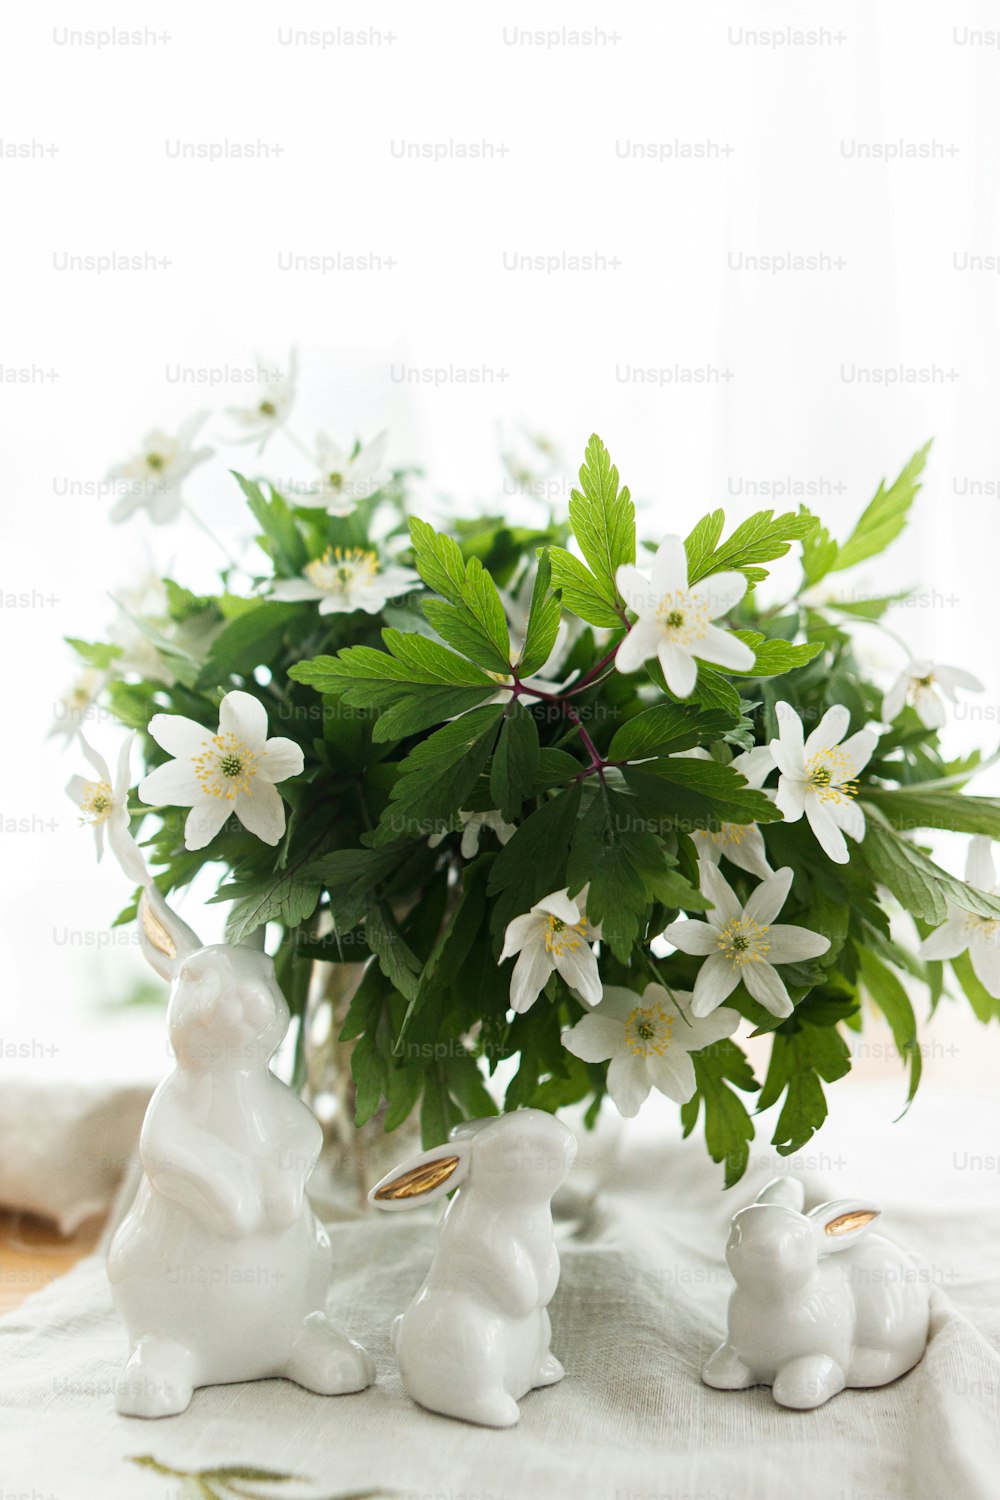 Lindos conejitos blancos y flores de primavera en servilleta de tela de lino sobre mesa rústica con luz suave. ¡Felices Pascuas! Concepto de caza de Pascua. Figuritas de conejo blanco y anémonas en flor flores bodegón rural